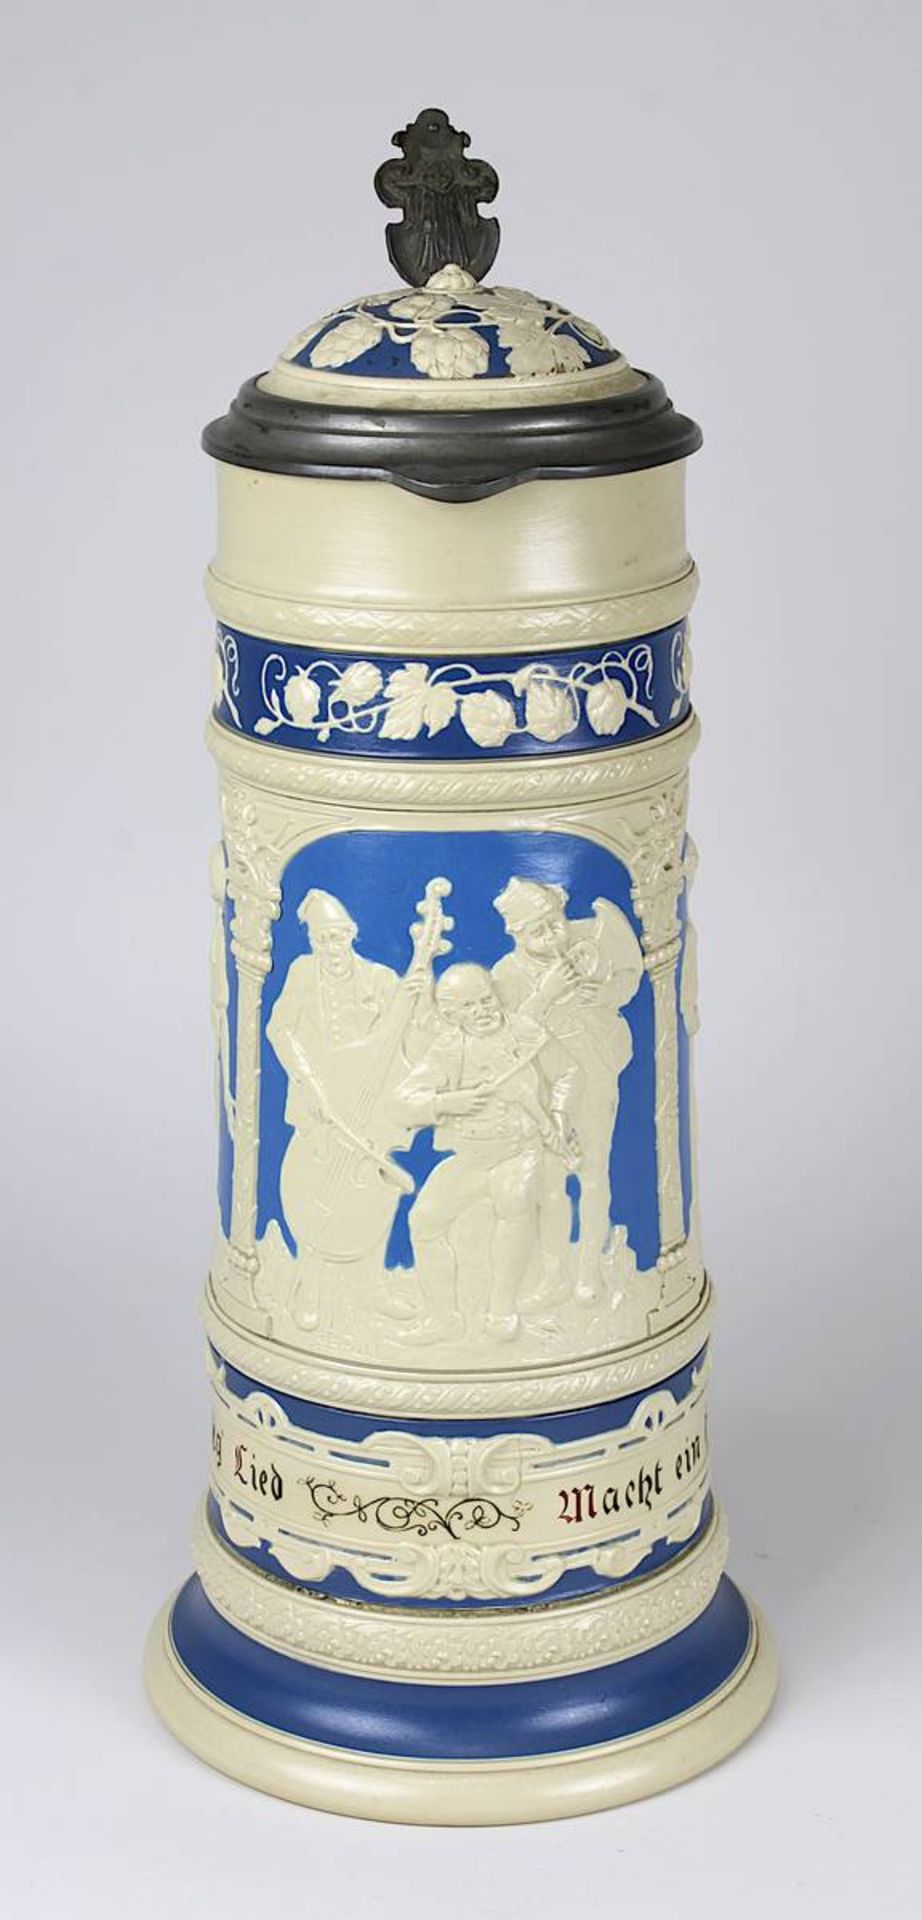 Villeroy & Boch Mettlach, großer Bierkrug mit Deckel, Mettlach 1896, Keramik gelb-cremefarbener - Image 3 of 4